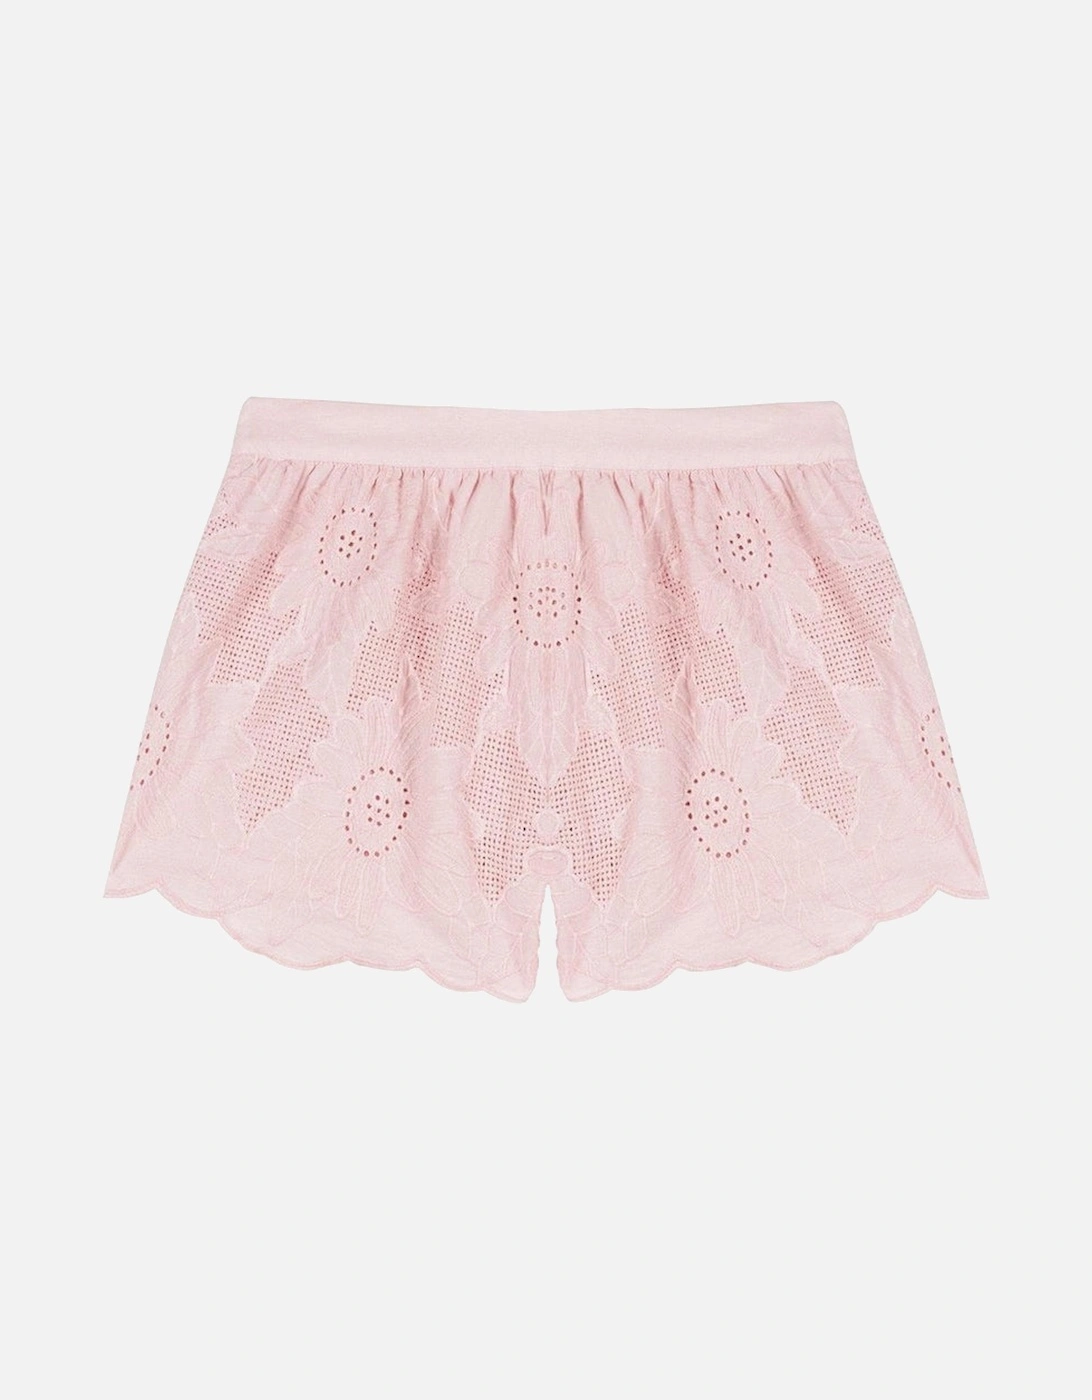 Girls Pink Shorts, 3 of 2